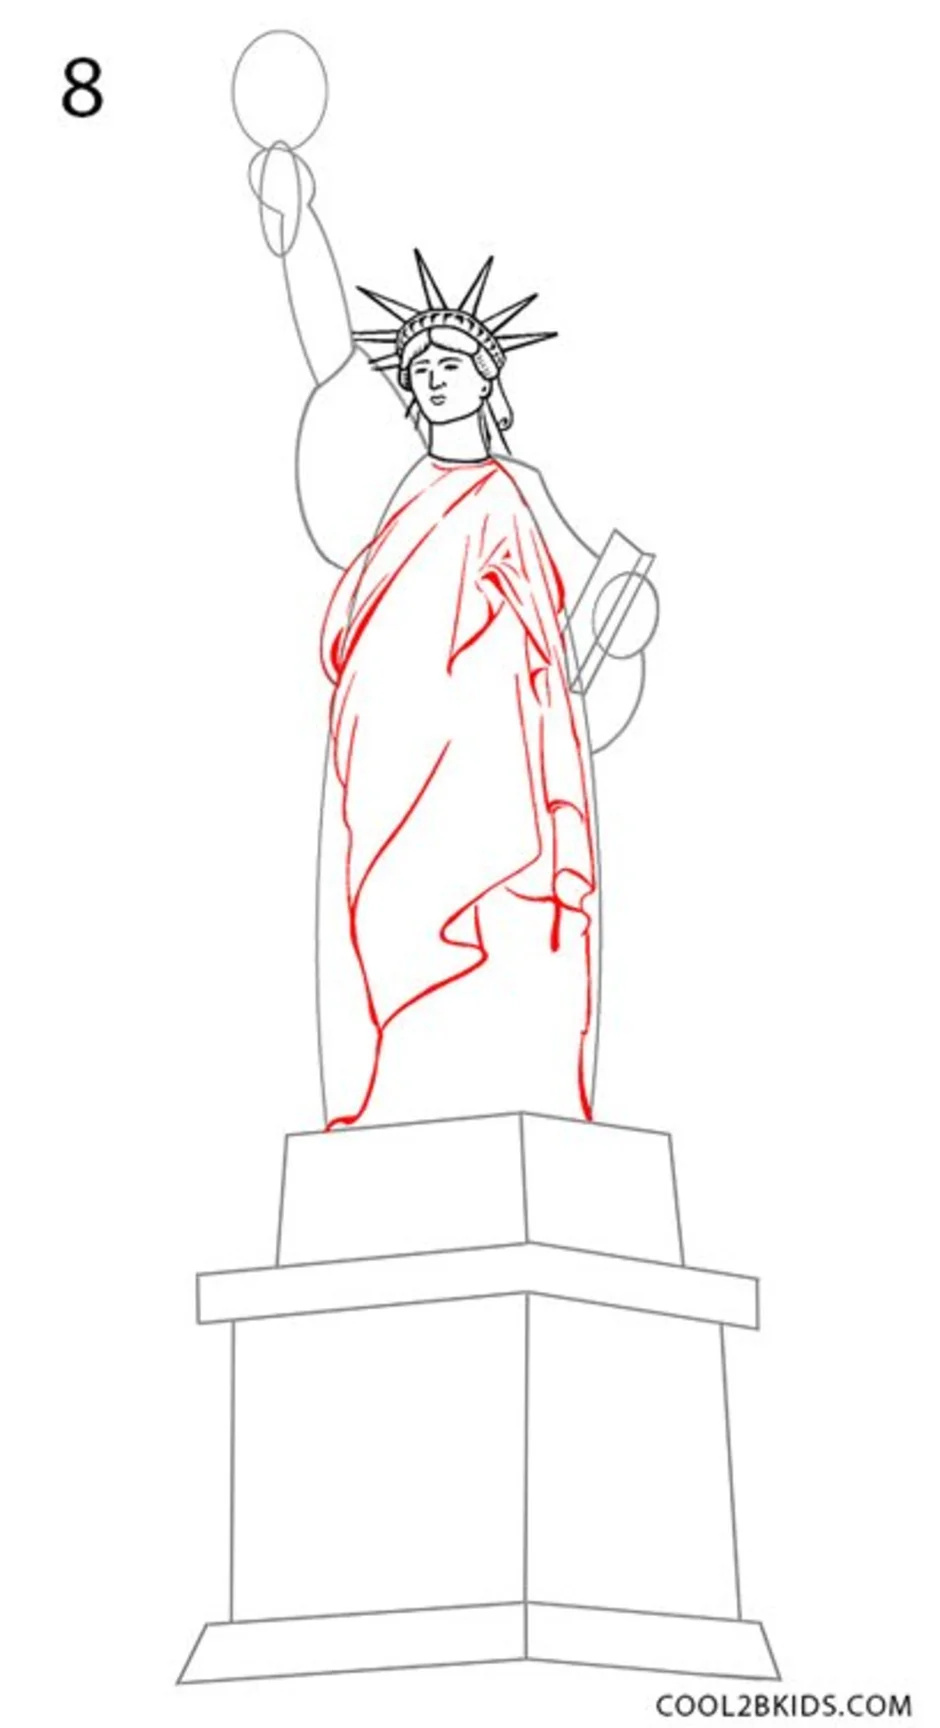 нарисовать статую свободы